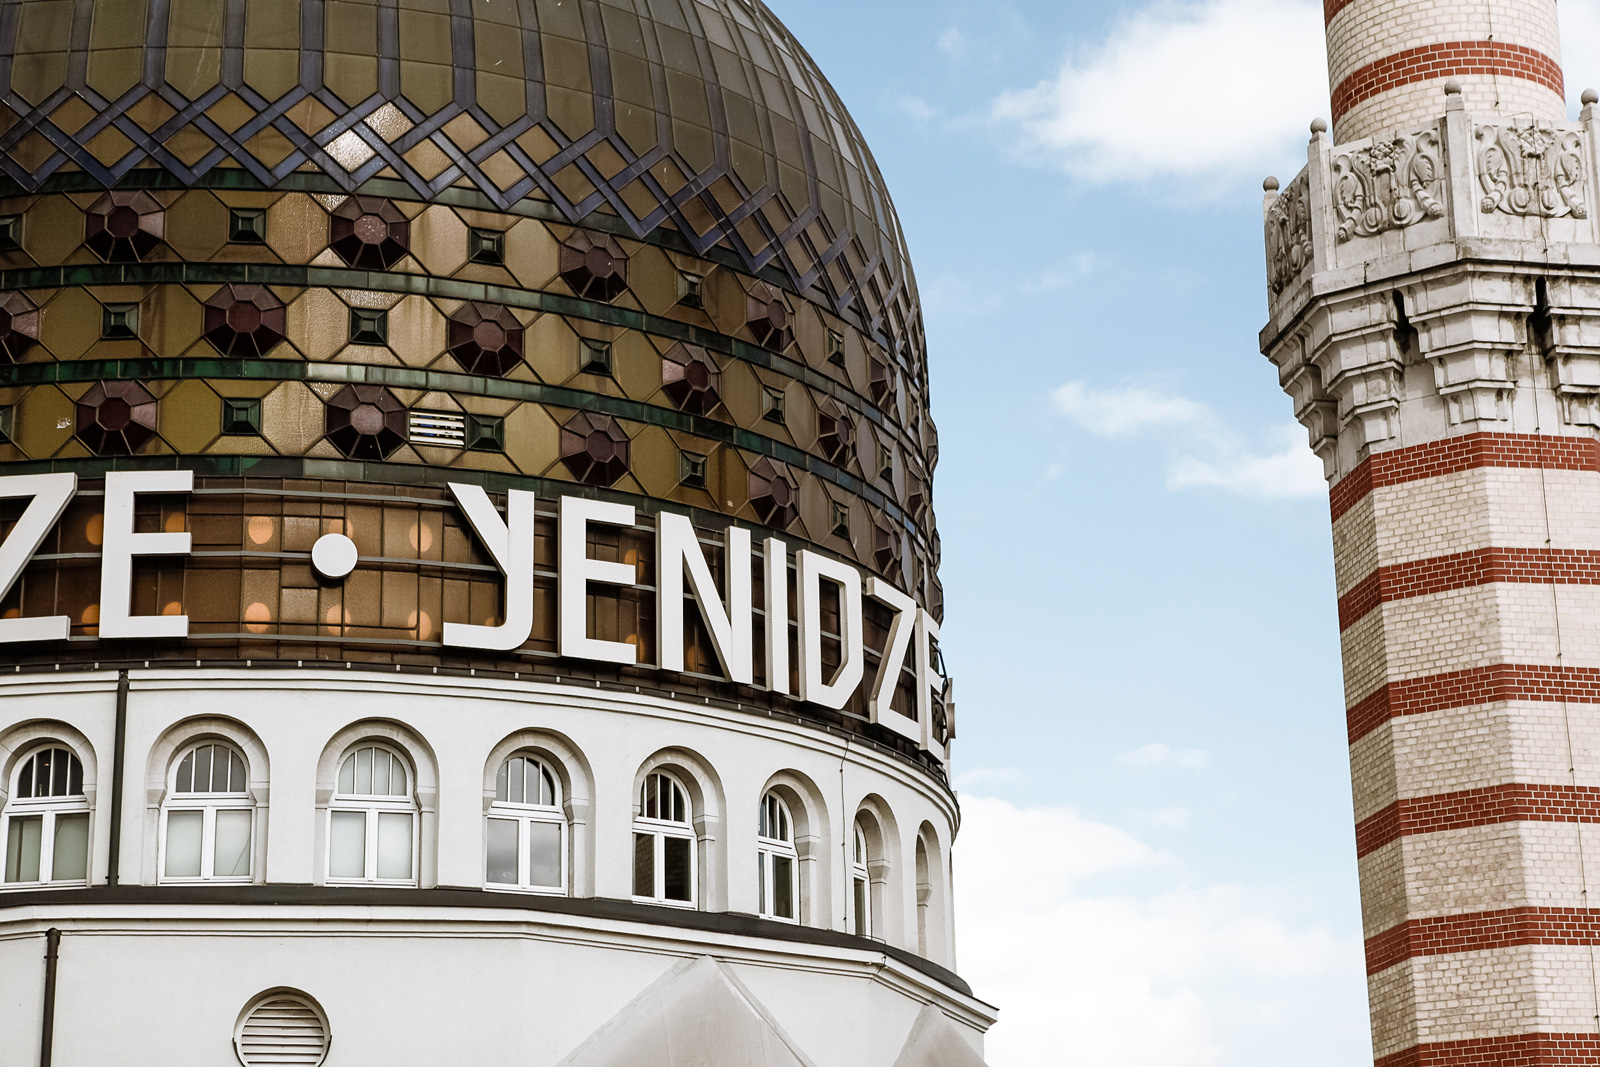 Yenidze zu einer der weltweit schönsten Fabriken gekürt